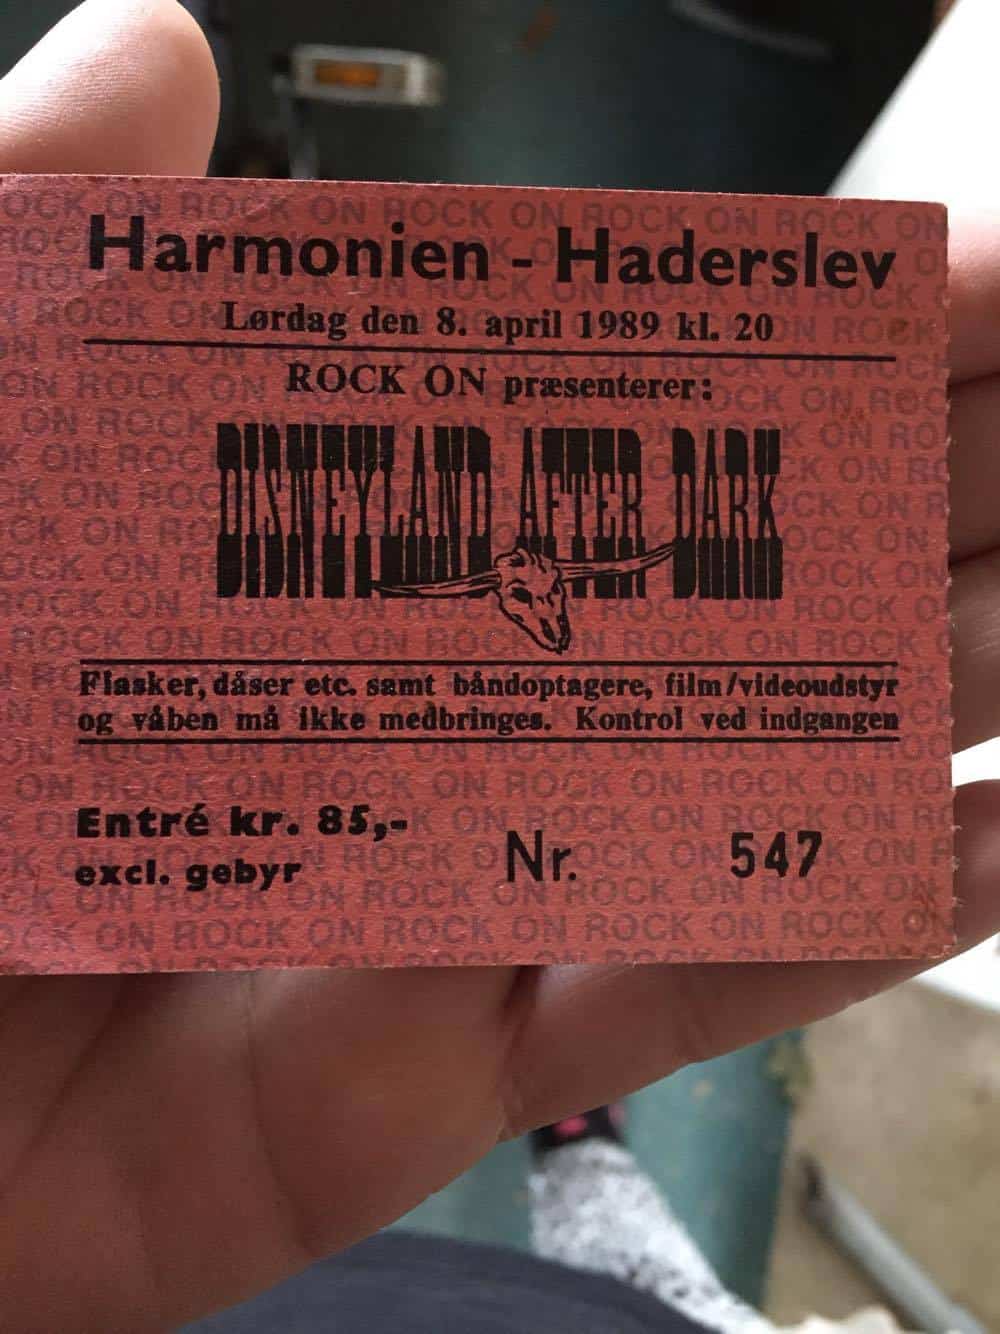 TICKET FOR HARMONIEN, HADERSLEV (DK), APRIL 8, 1989